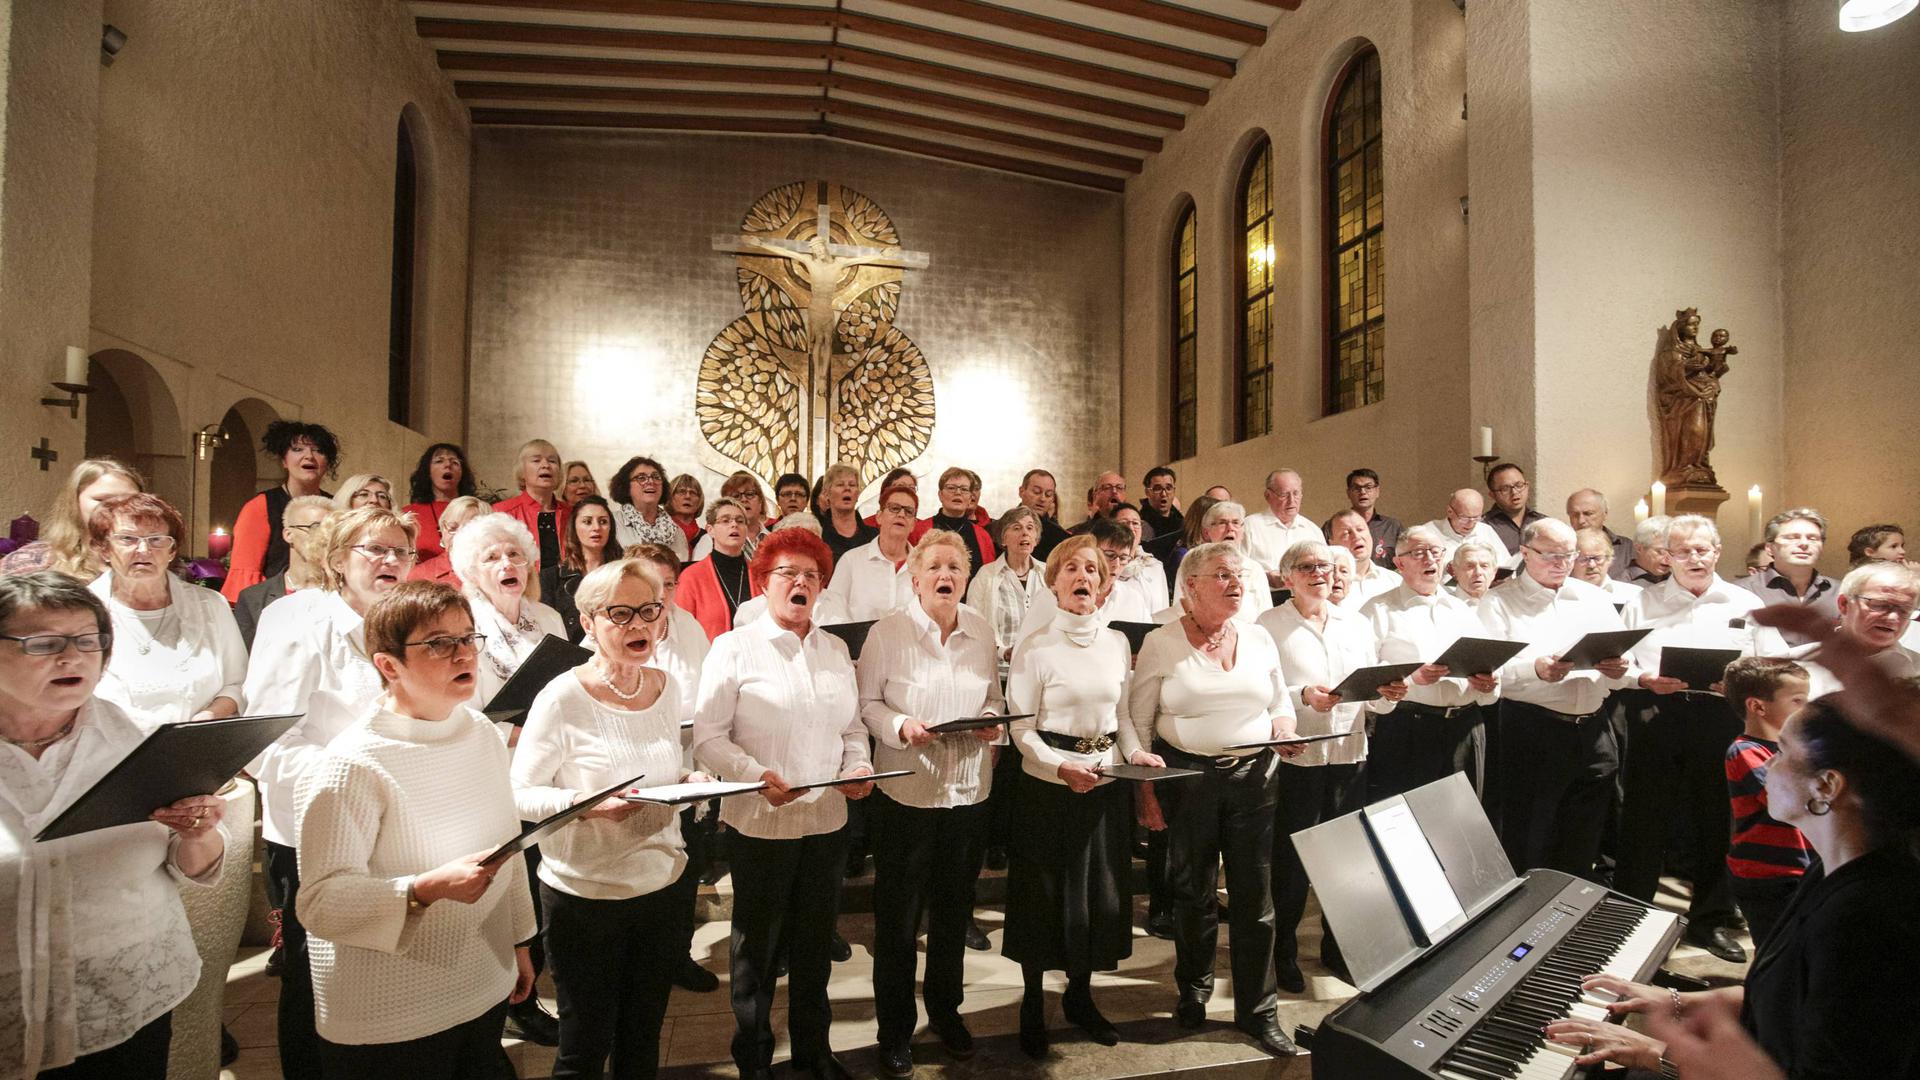 In der katholischen Kirche Liebfrauen Niefern. Beim Weihnachtskonzert der Chorgemeinschaft Niefern singen gemischter Chor, Männerensemble „6 für 4“ und PuSCH-Chor zusammen.